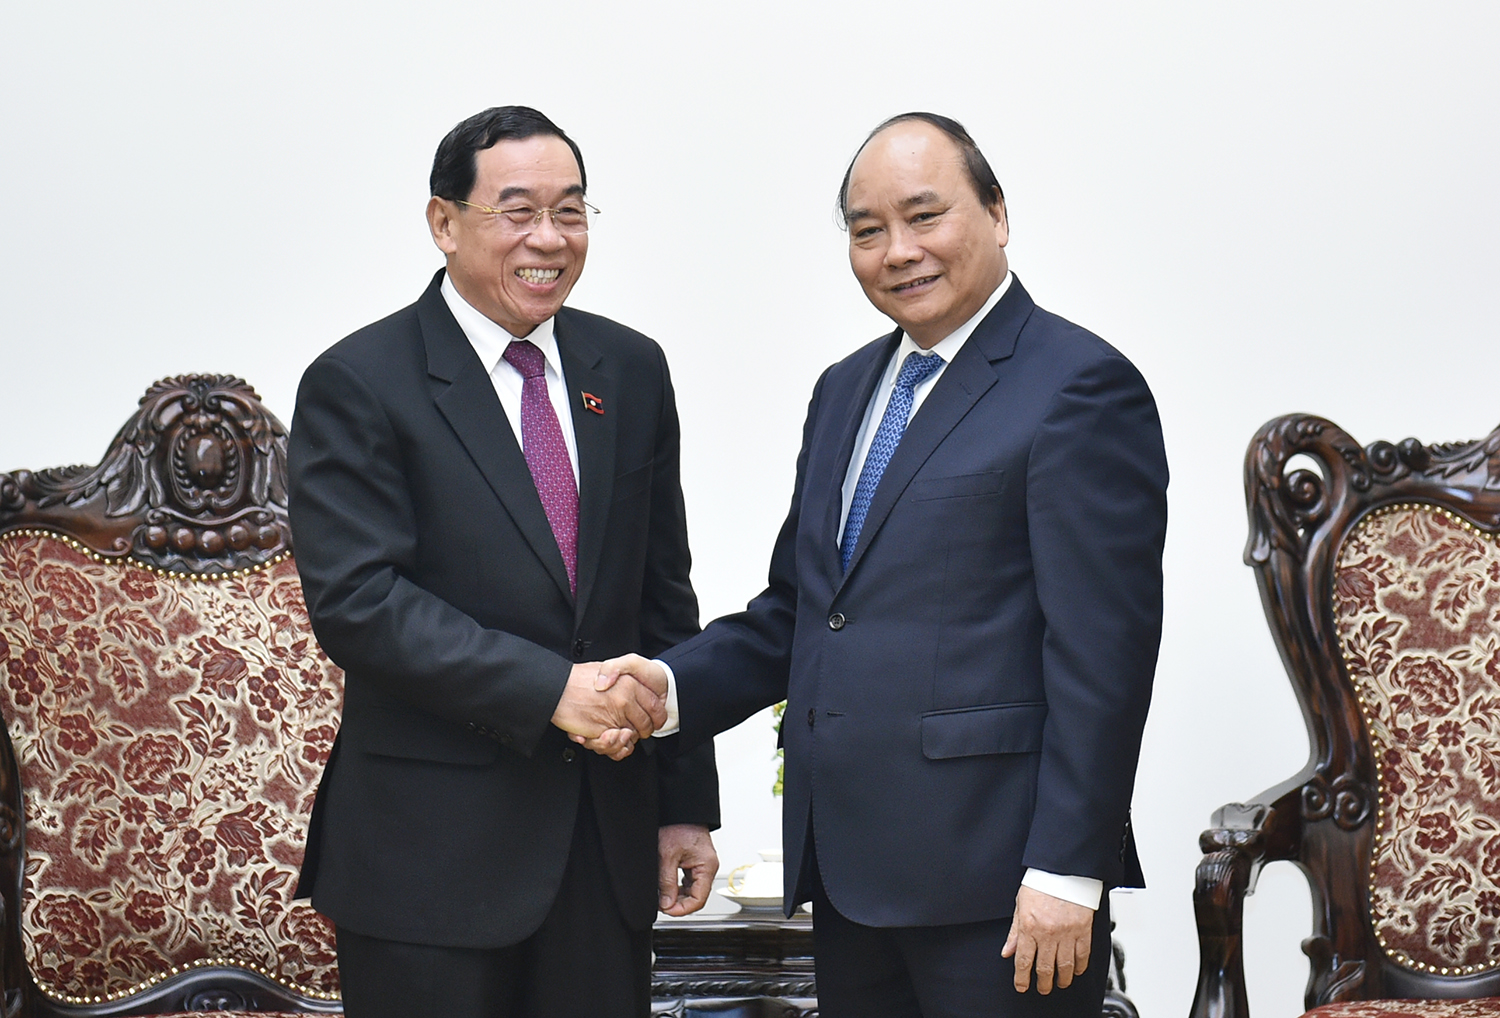  Thủ tướng Nguyễn Xuân Phúc tiếp Bộ trưởng Công chính và Vận tải Lào Bounchan Sinthavong. Ảnh: VGP